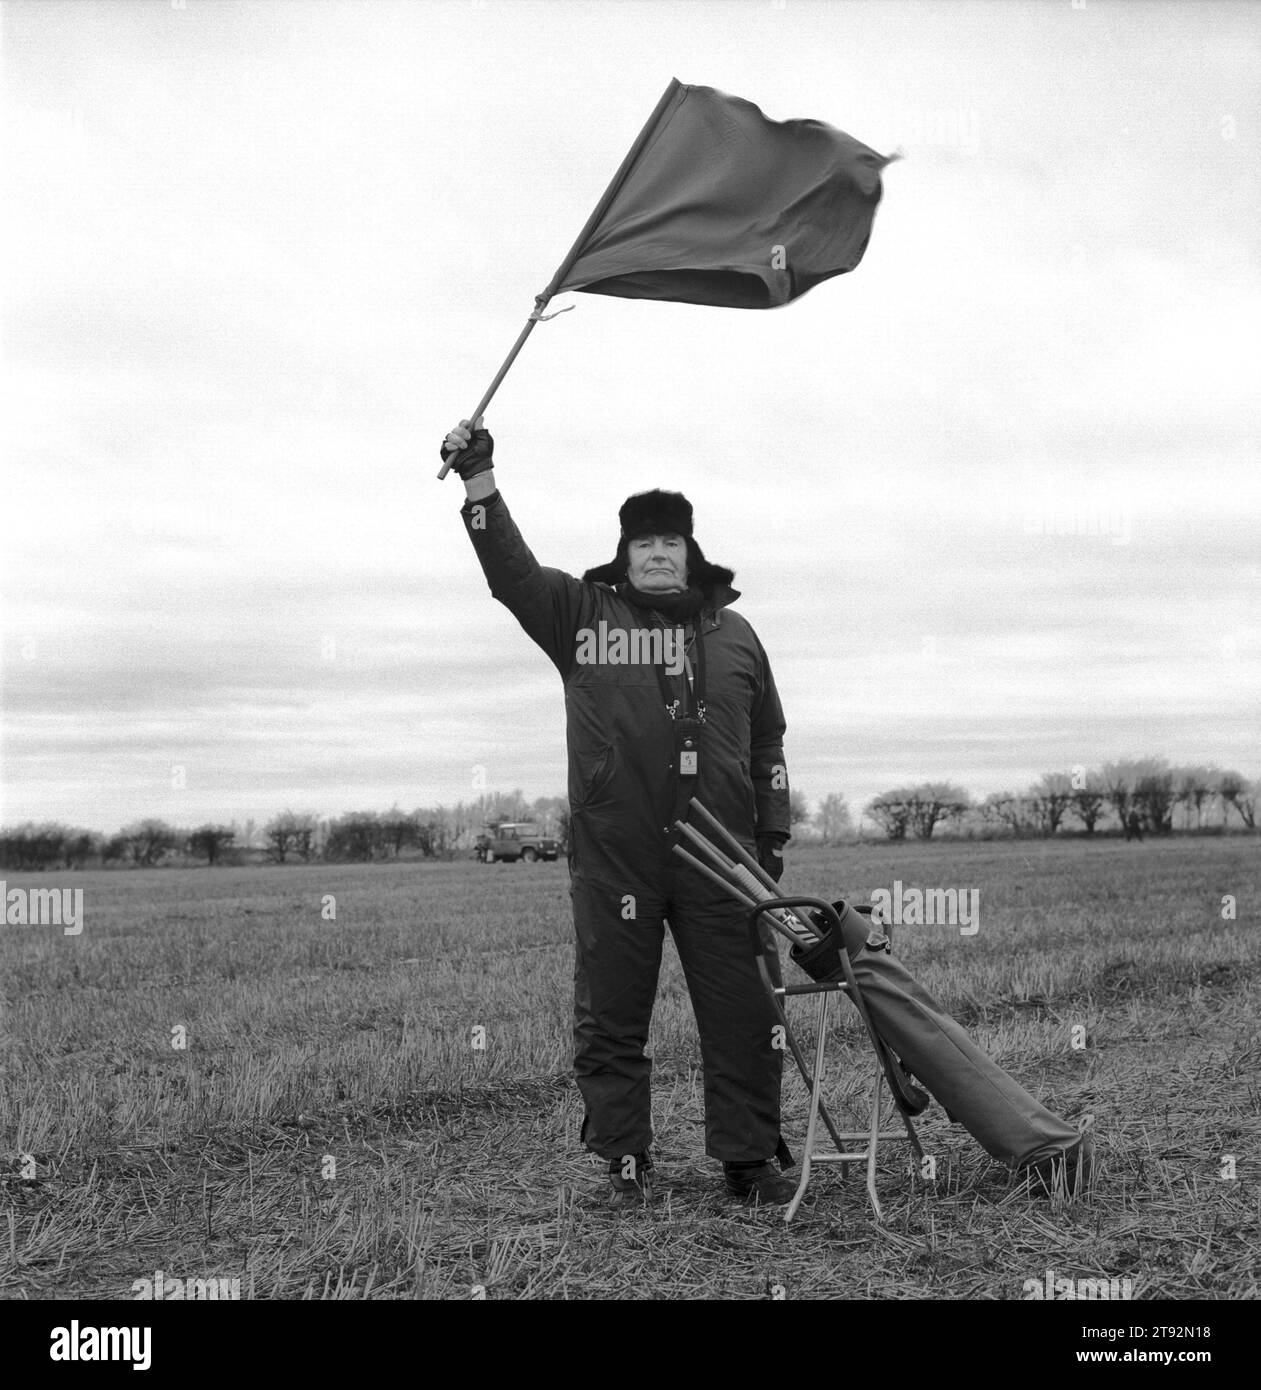 Hare Coursing 2000s UK. An einem bitterkalten Februartag treffen sich Mitglieder des Swaffham Coursing Club in der Nähe von Narborough, Norfolk. Der Richter auf dem Pferd überwacht jeden Kurs. Er trägt eine kleine rote und weiße Flagge, die er schwenkt, um dem Flaggenmann anzuzeigen, den greyhound gewonnen hat. Der Fahnenmann fliegt dann die entsprechende farbige Flagge. England 2000er Jahre HOMER SYKES Stockfoto